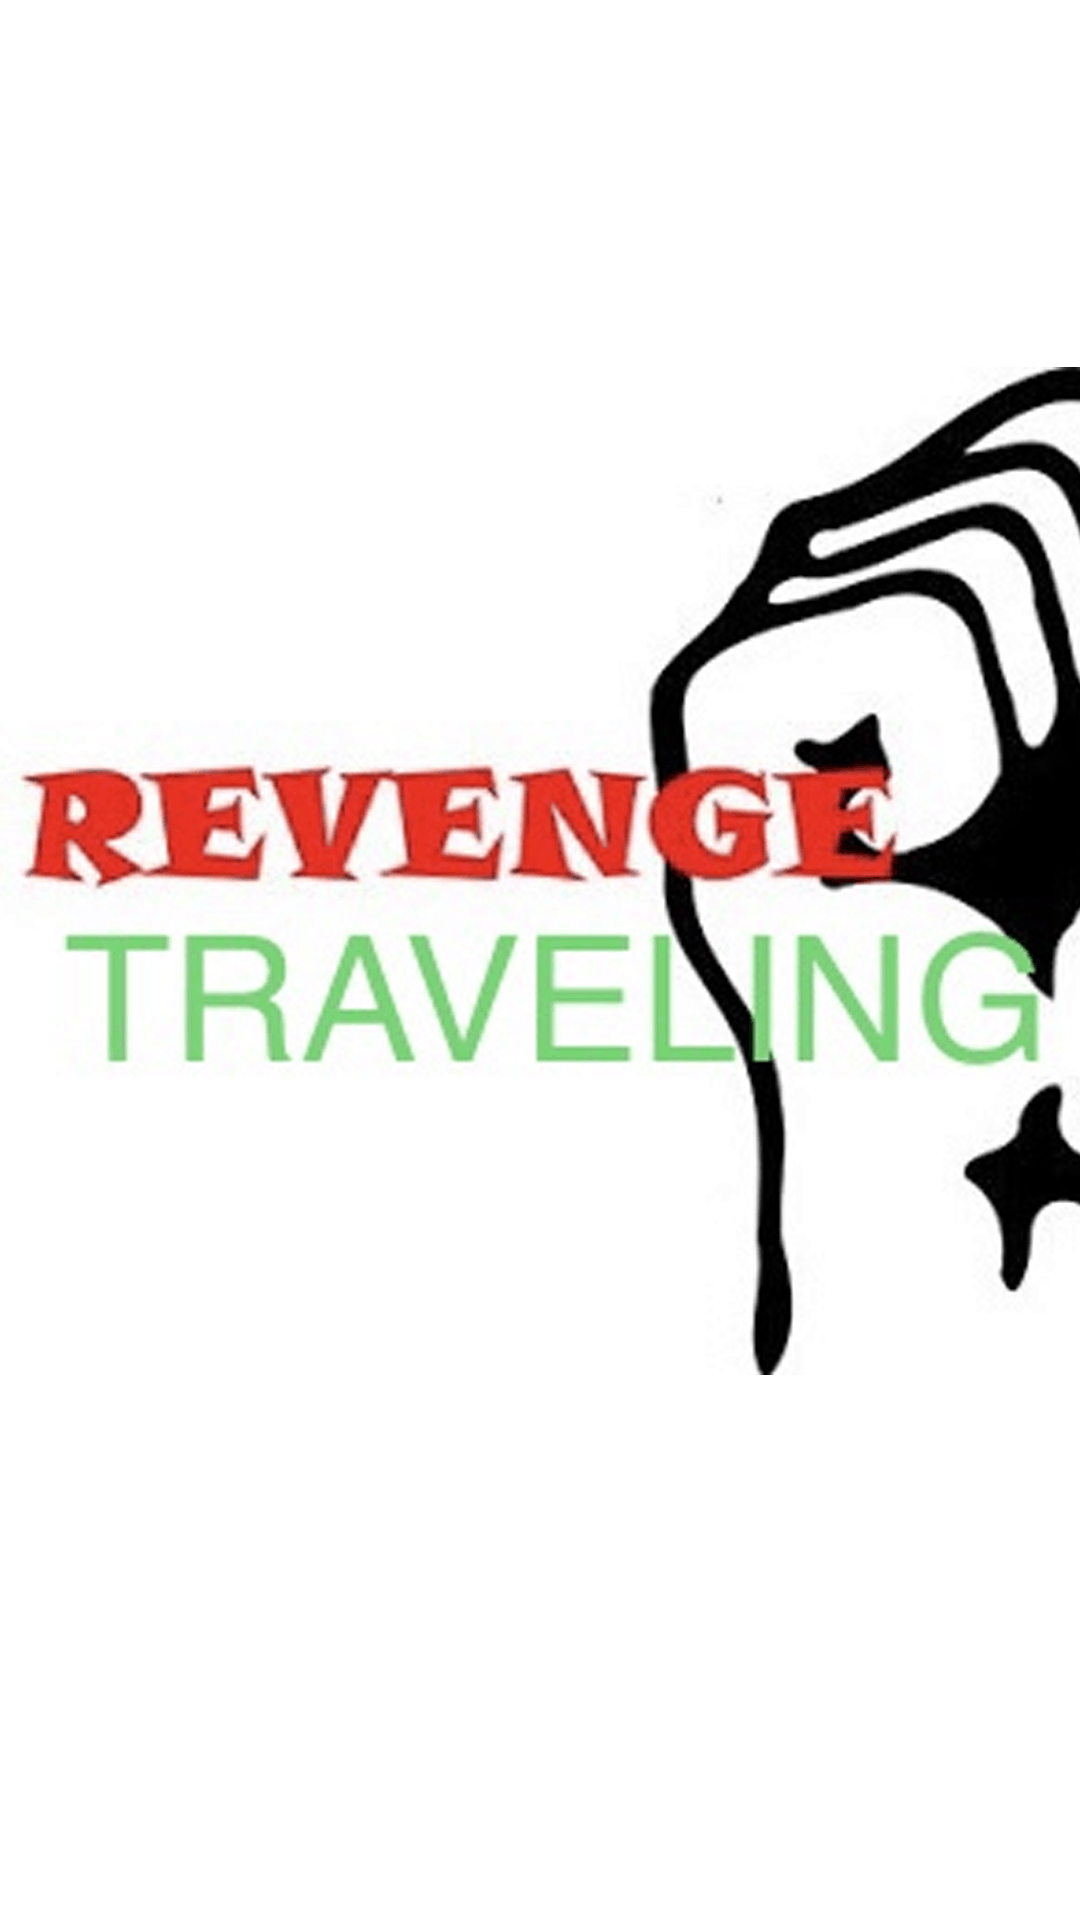 FI_travel-daily-media-revenge-travelling